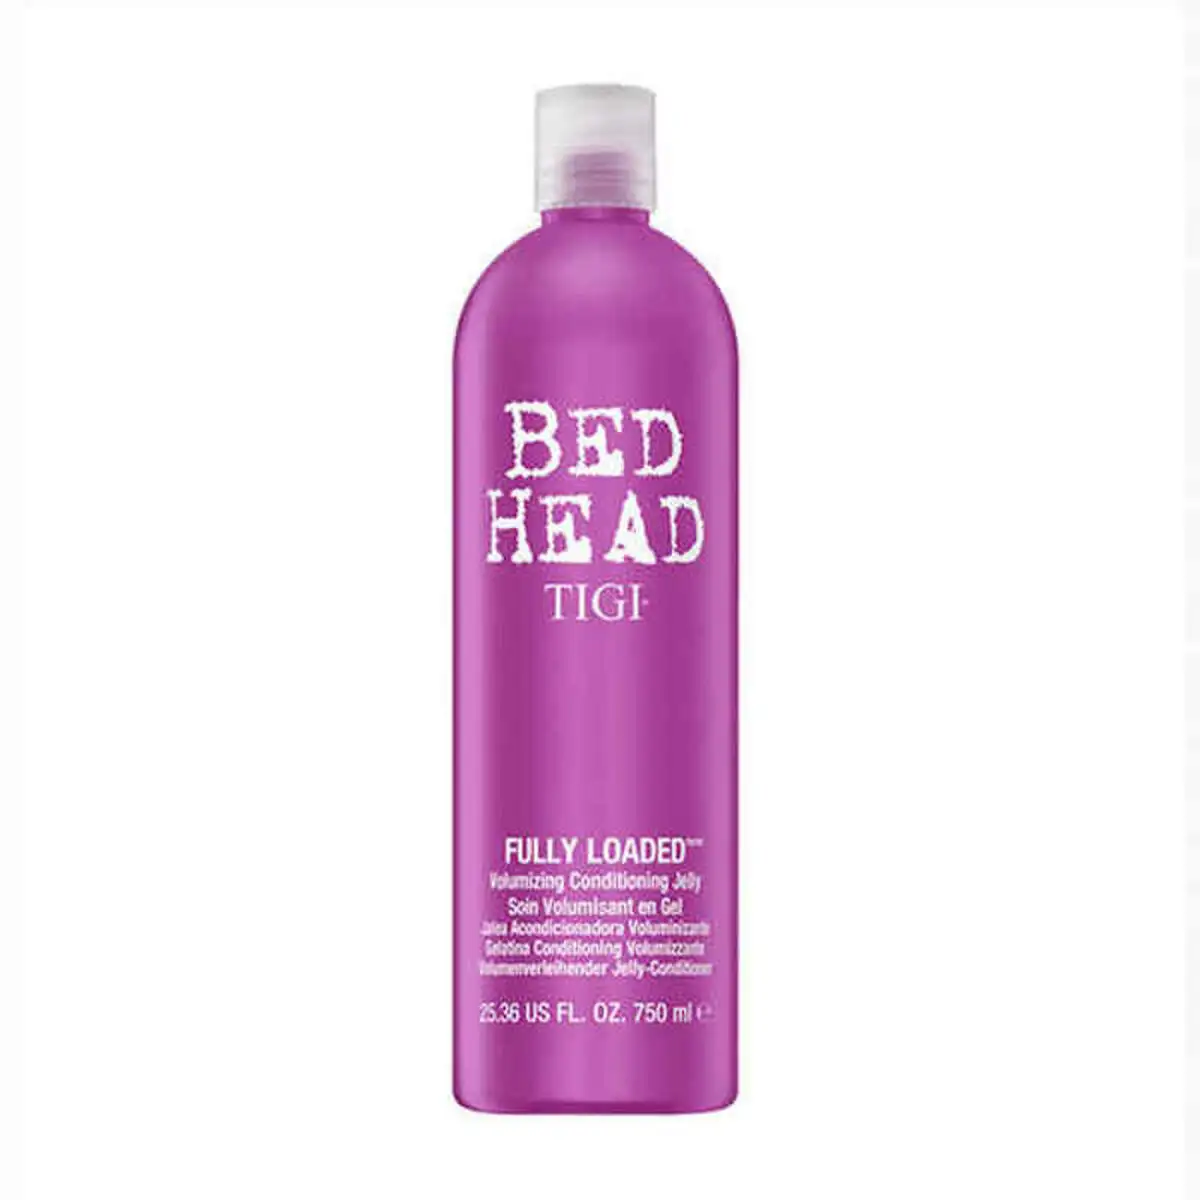 Apres shampooing pour cheveux fins bed head tigi 750ml _5419. DIAYTAR SENEGAL - Votre Passage vers le Raffinement. Plongez dans notre univers de produits exquis et choisissez des articles qui ajoutent une touche de sophistication à votre vie.